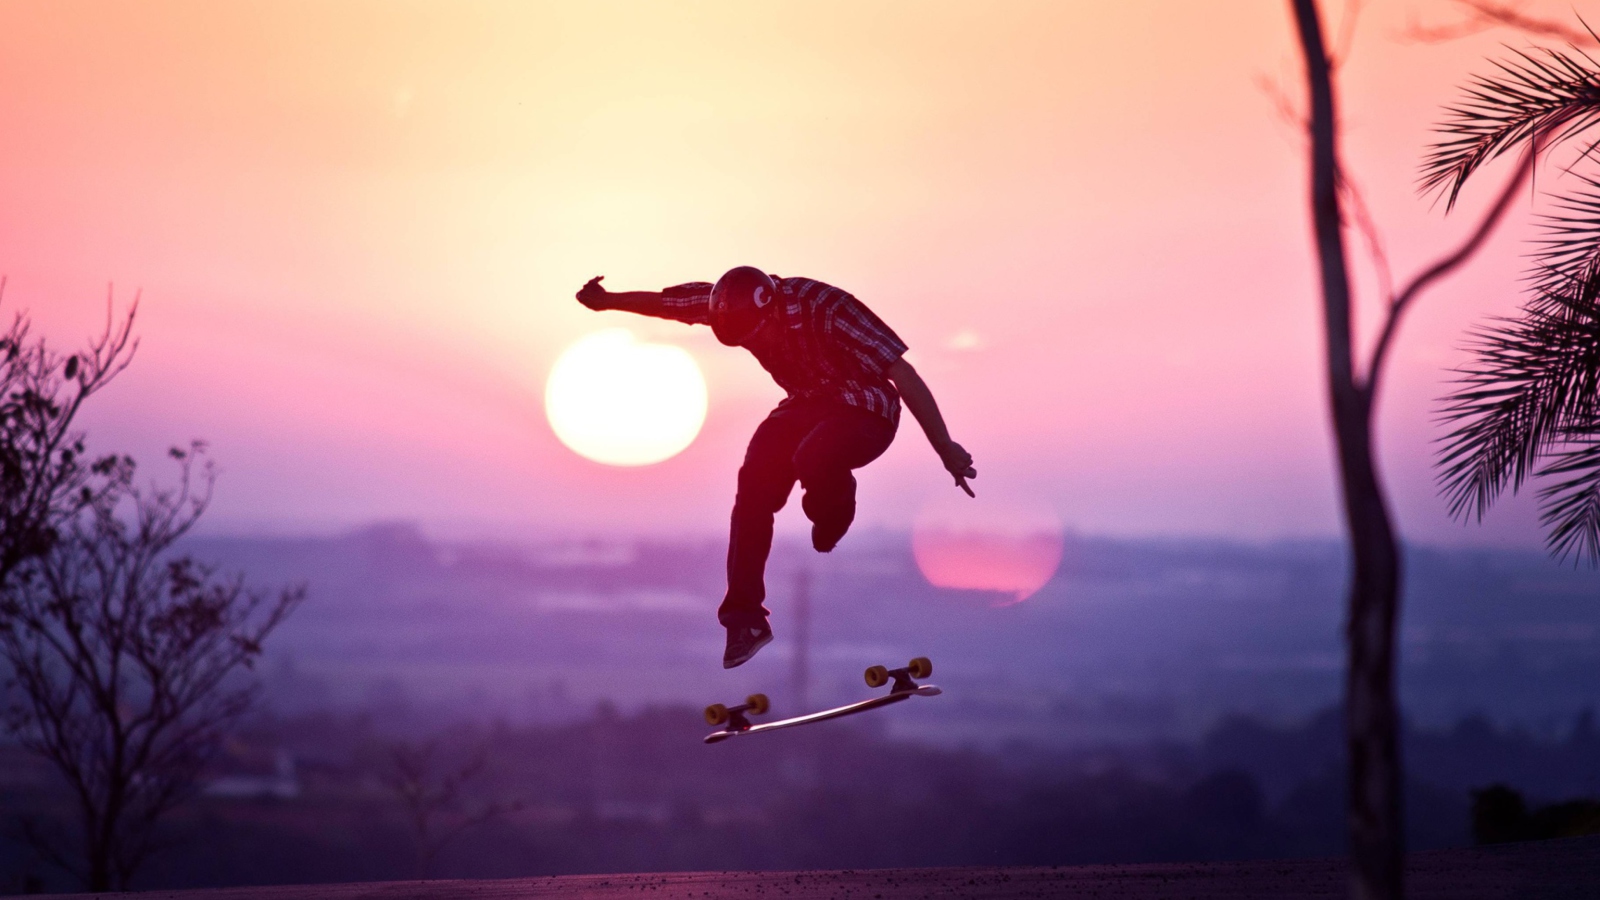 Sunset Skateboard Jump wallpaper 1600x900